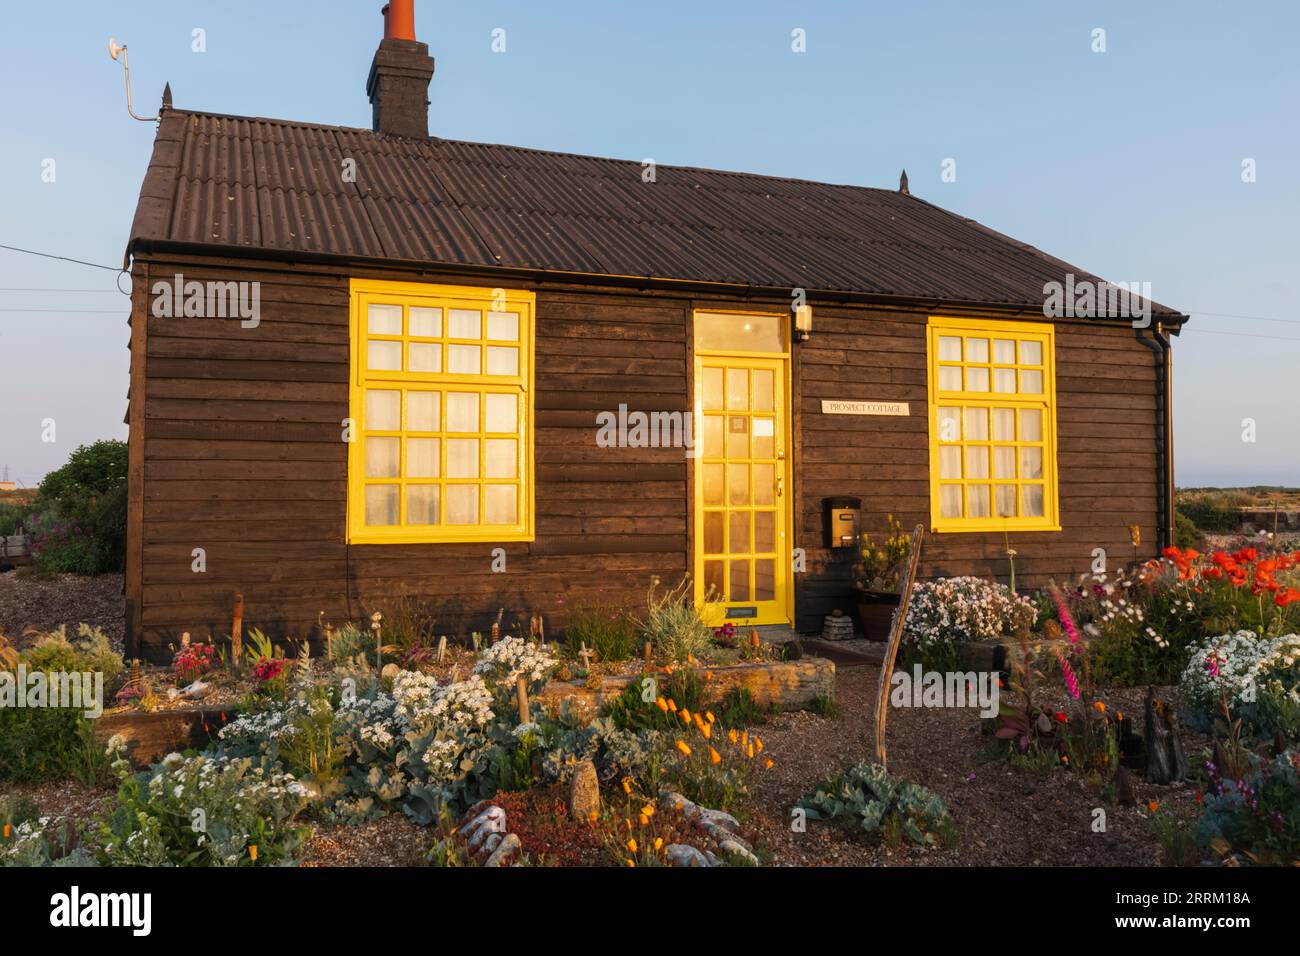 Angleterre, Kent, Dungeness, Prospect Cottage, l'ancien domicile du réalisateur Derek Jarman Banque D'Images